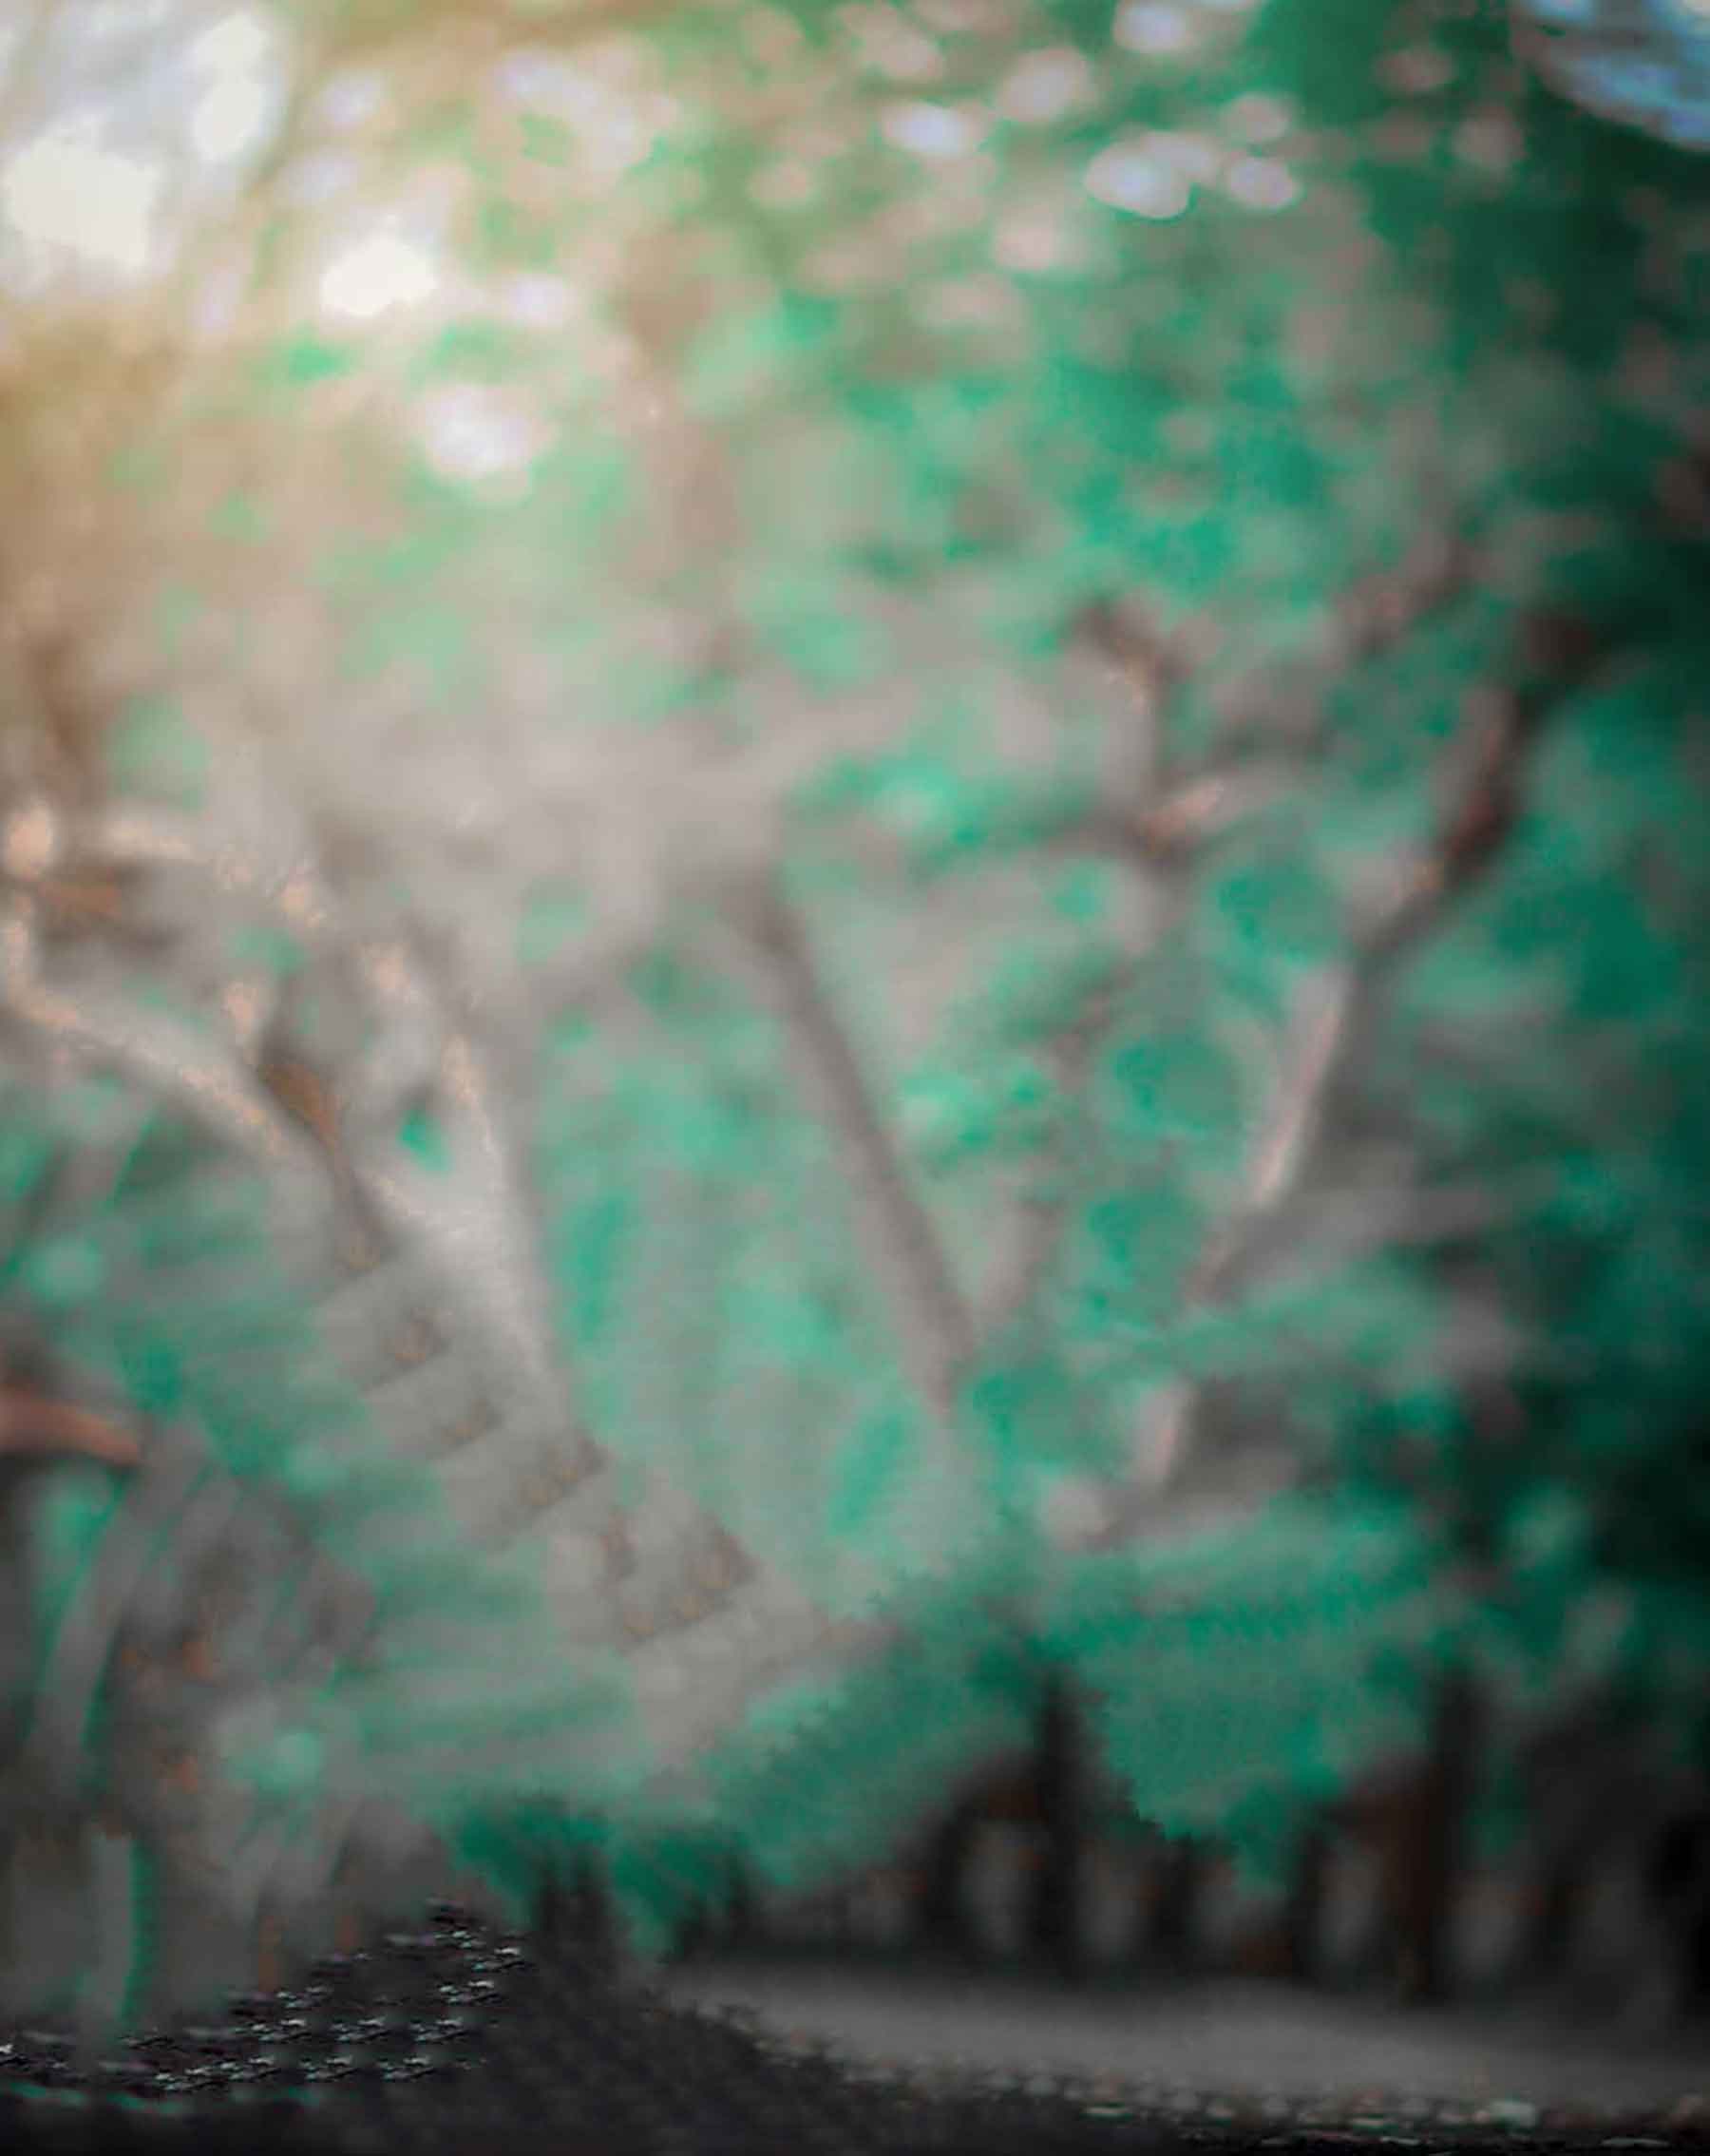 Hình nền Picsart CB màu xanh lá cây đậm: Picsart CB là một công cụ chỉnh sửa ảnh cực phổ biến hiện nay, và màu xanh lá cây toát lên sự tươi trẻ, tràn đầy sức sống. Kết hợp với hình nền Picsart CB màu xanh lá cây đậm, bạn sẽ có được một bức ảnh đủ mạnh mẽ để chiếm lĩnh các trang mạng xã hội.